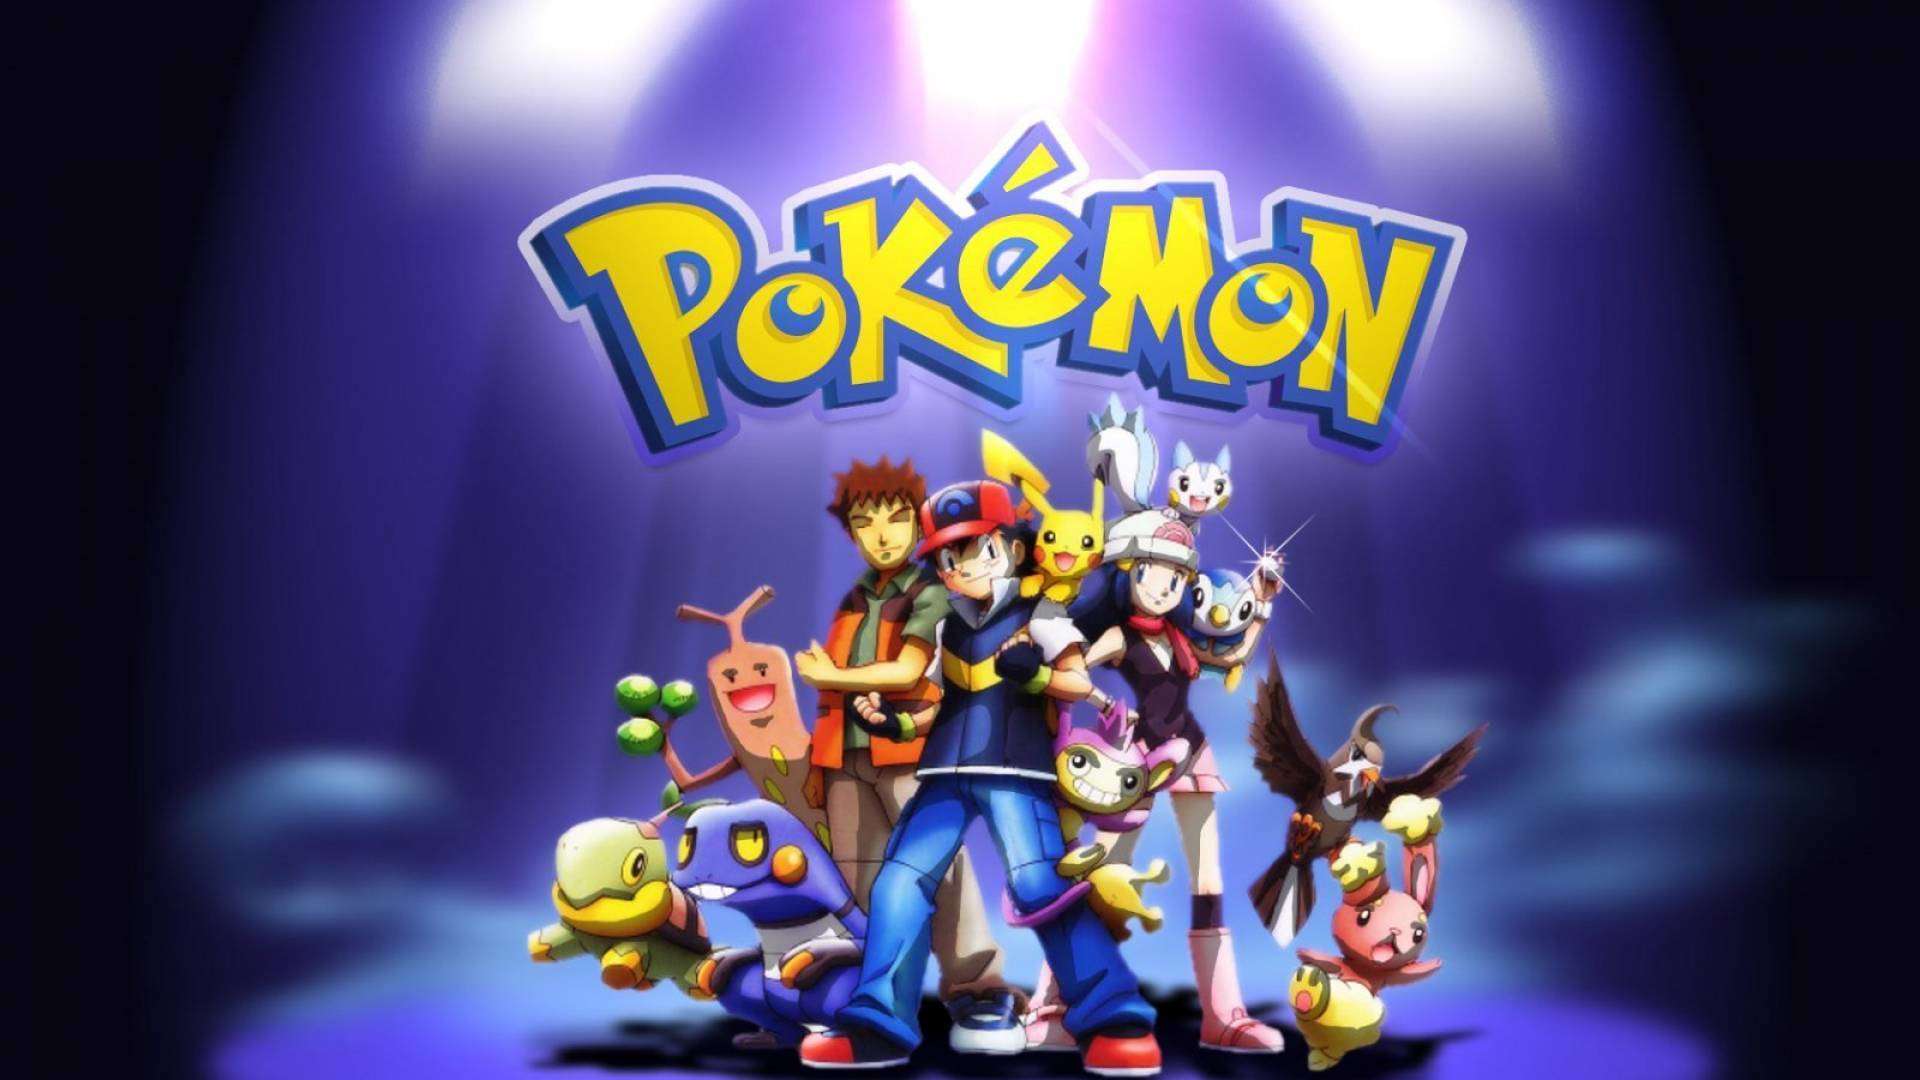 Game Bảo bối huyền thoại lấy nội dung từ bộ manga nổi tiếng Pokemon 